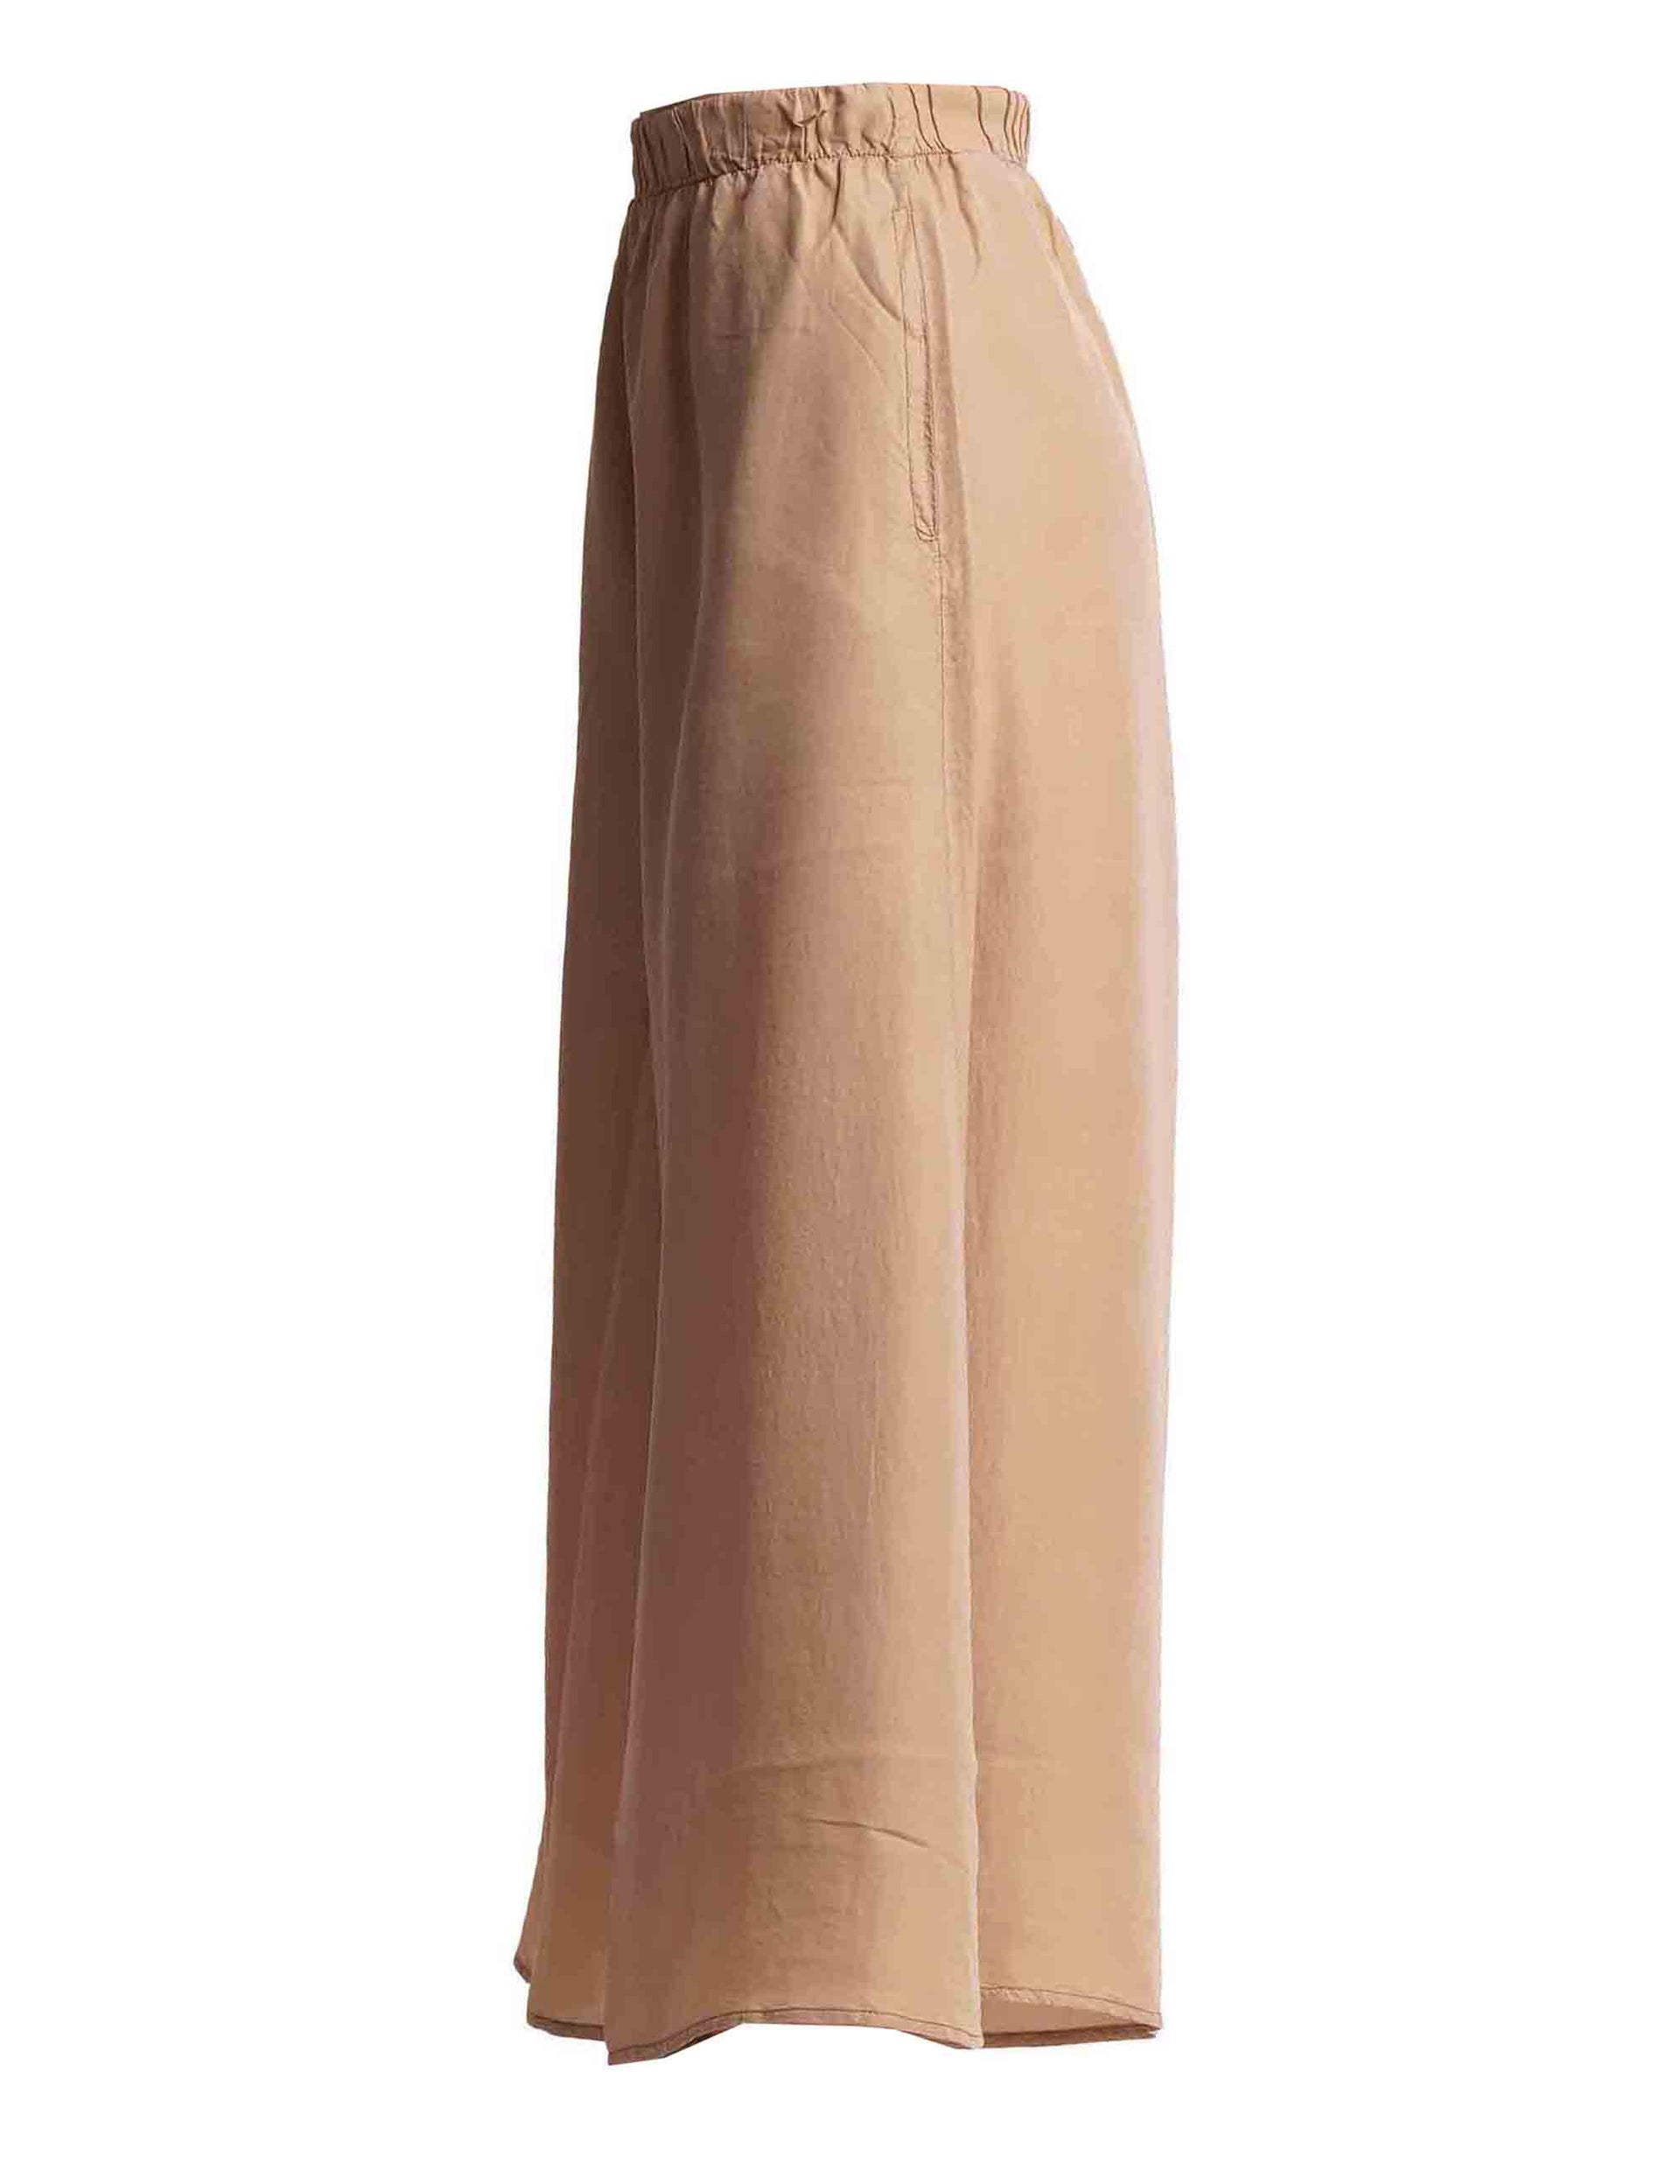 Women's wide-leg trousers in pure camel silk